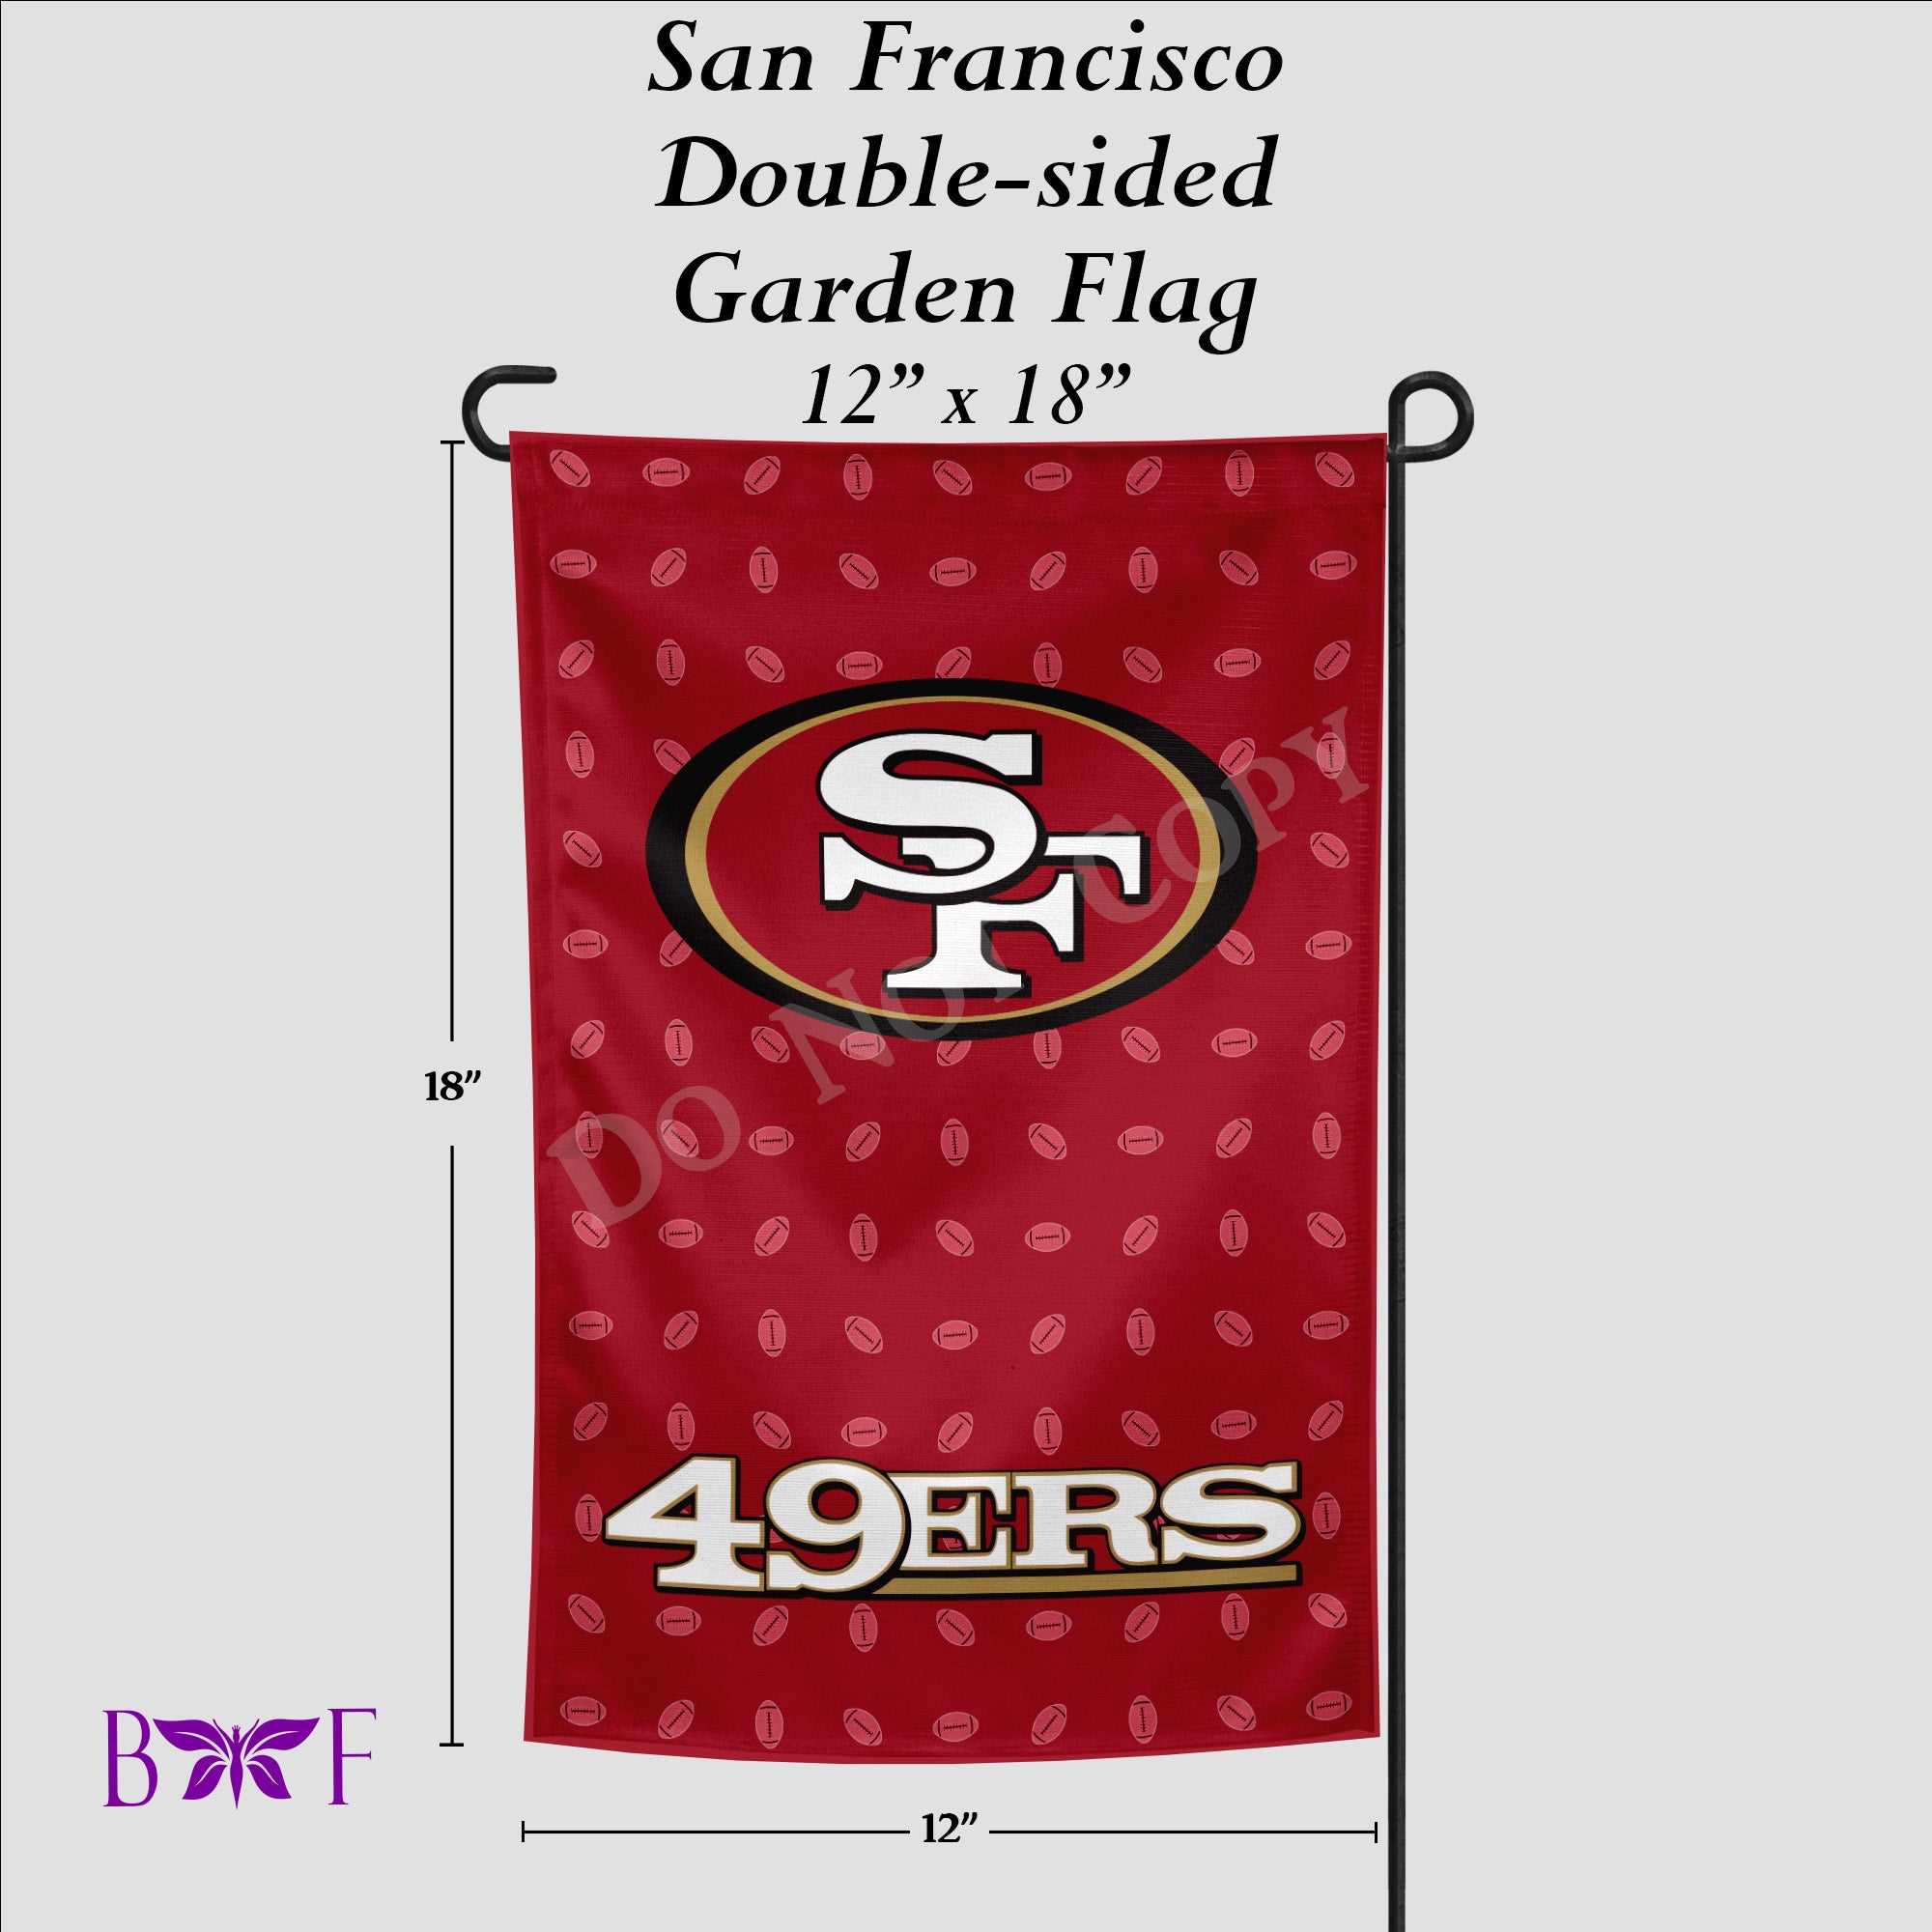 San Francisco Garden Flag